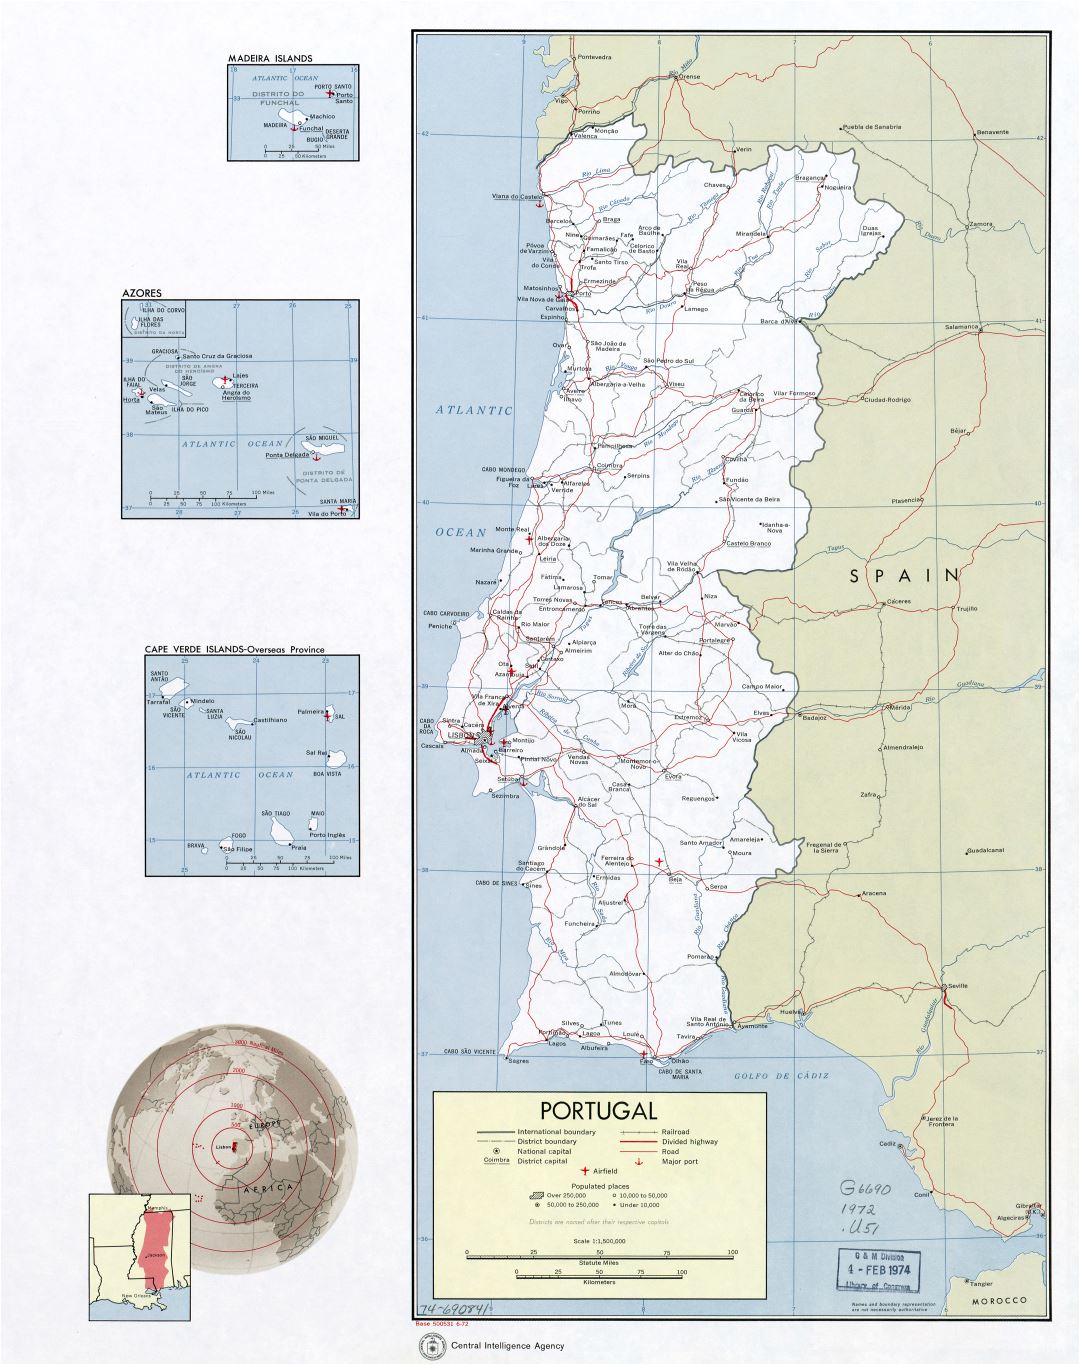 Крупномасштабная политическая и административная карта Португалии с дорогами, железными дорогами, крупными городами, аэропортами и портами - 1972